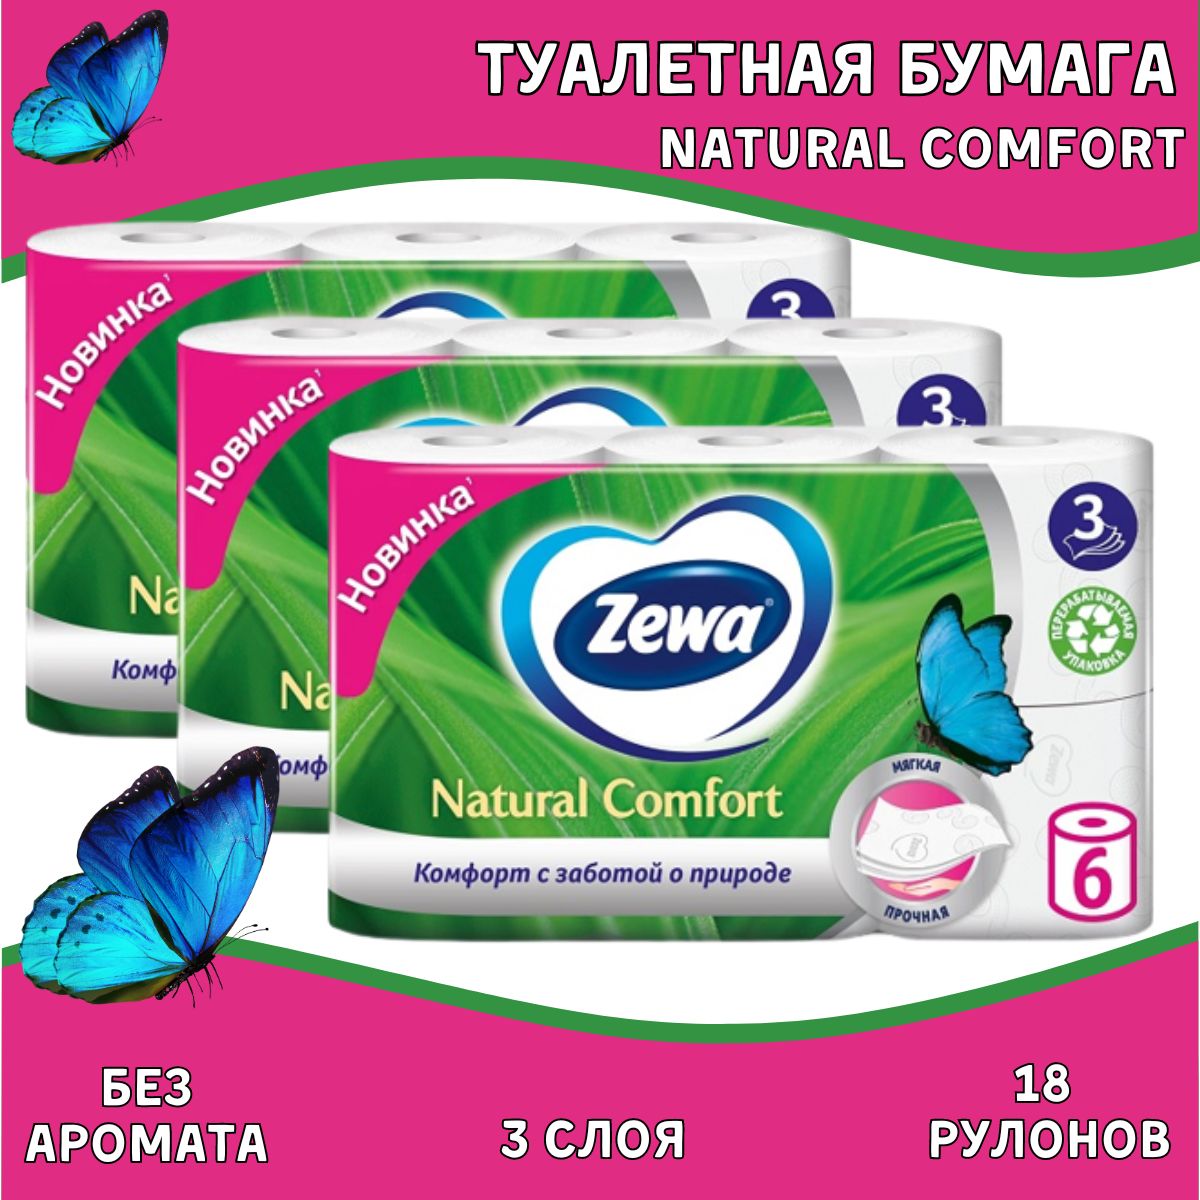 Zewa natural Comfort. Zewa natural Comfort туалетная бумага 3сл 6рул. Салфетки Zewa natural Comfort 3 слоя.